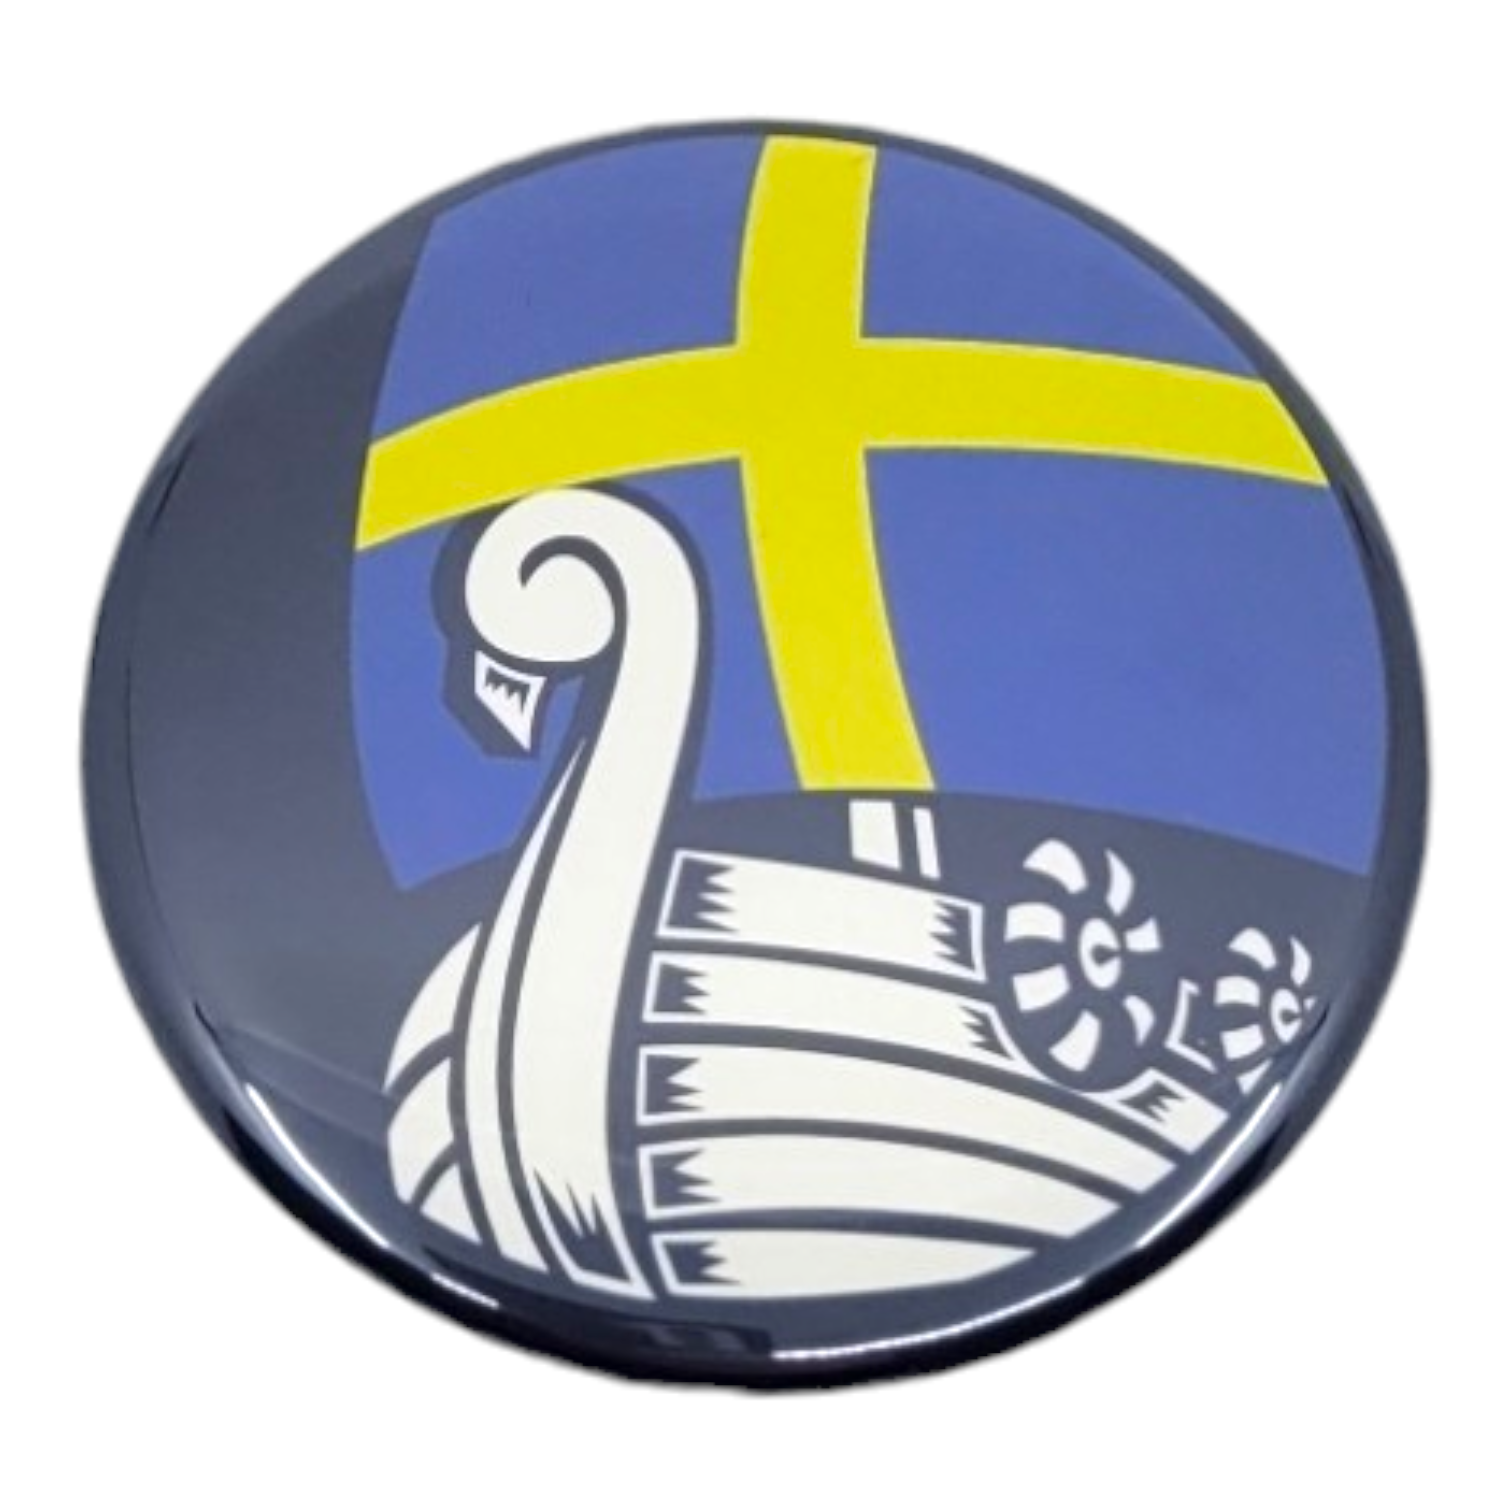 Magnet: Sweden Viking Ship, 2.25" Round Magnet